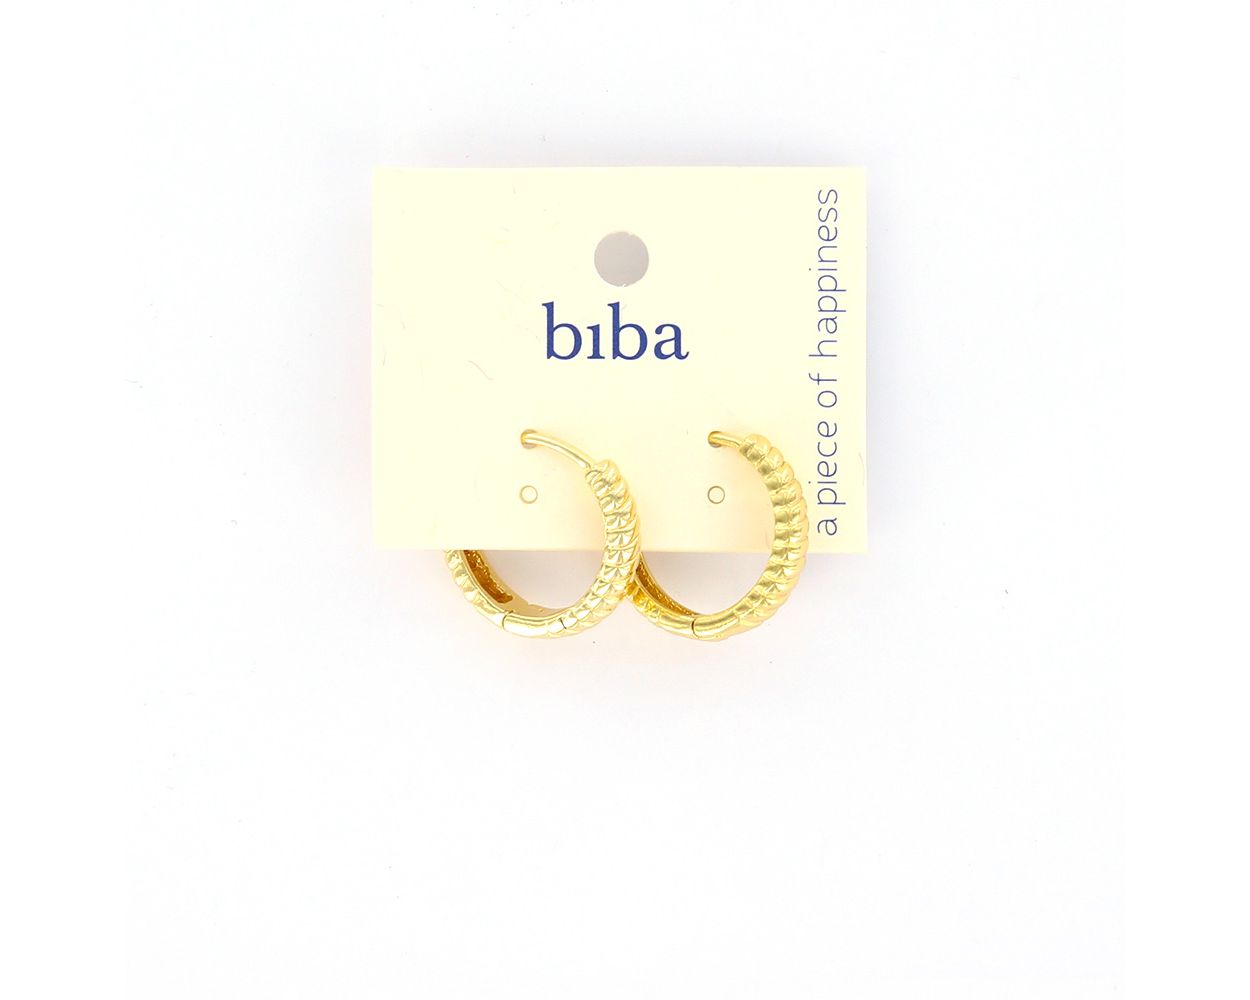 Biba oorbellen Forever Classics - 83510